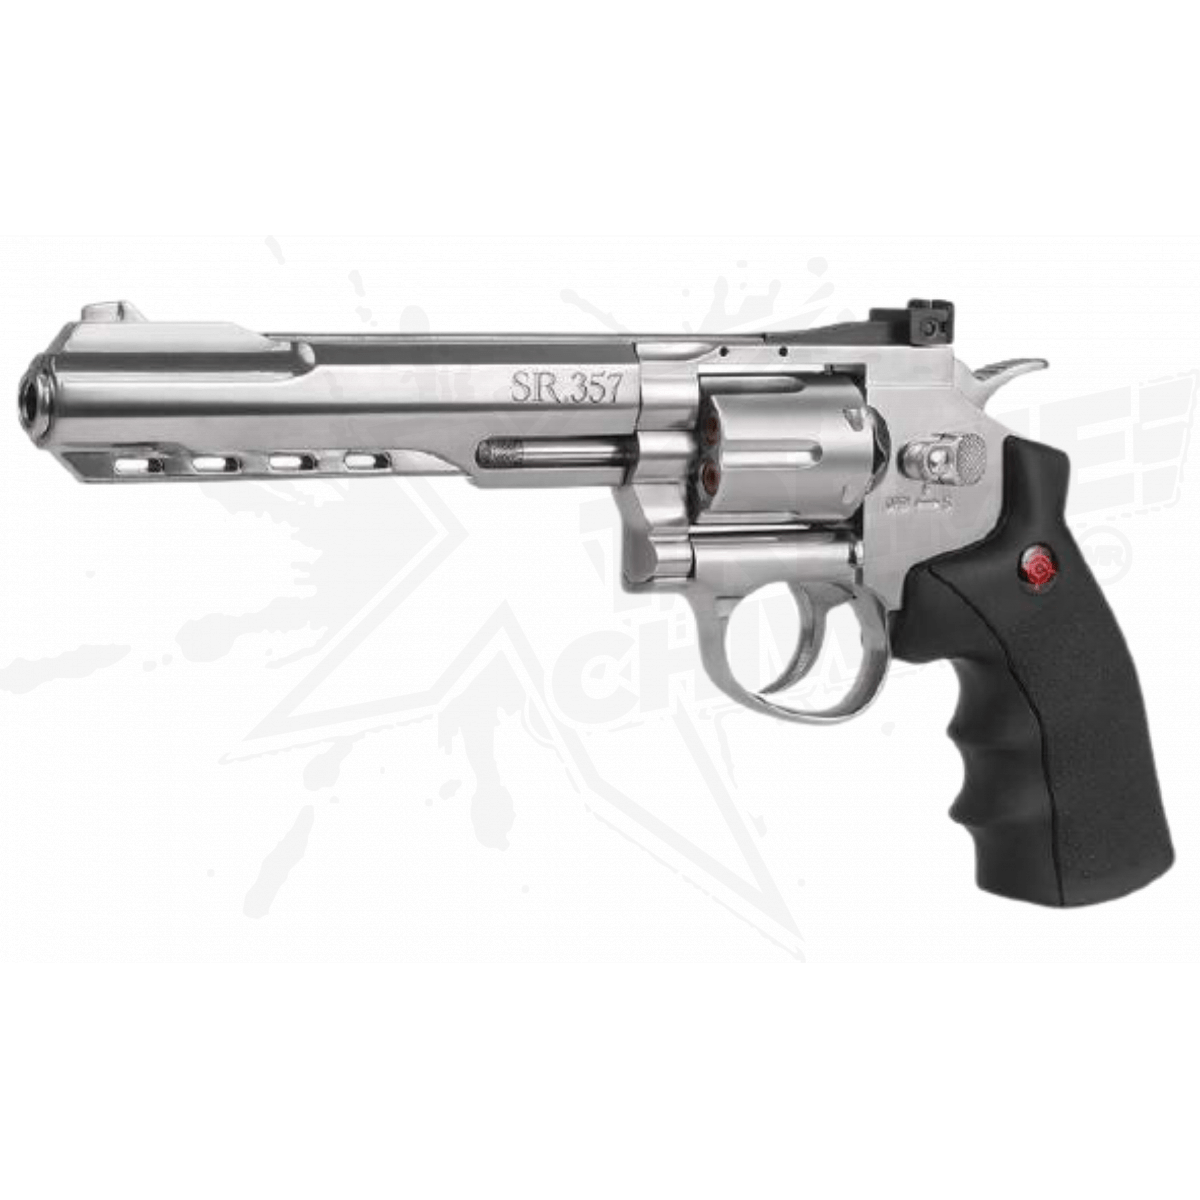 Pack Revolver Aire Comprimido (CO2) Gamo GR-Stricker, Revolver co2, Gamo  4,5 mm, potencia 3 Julios, 125 m/s, alza regulable, mira abierta, Pistola  bolas + Candado de Seguridad Yatek. Baratas, Precios y Ofertas